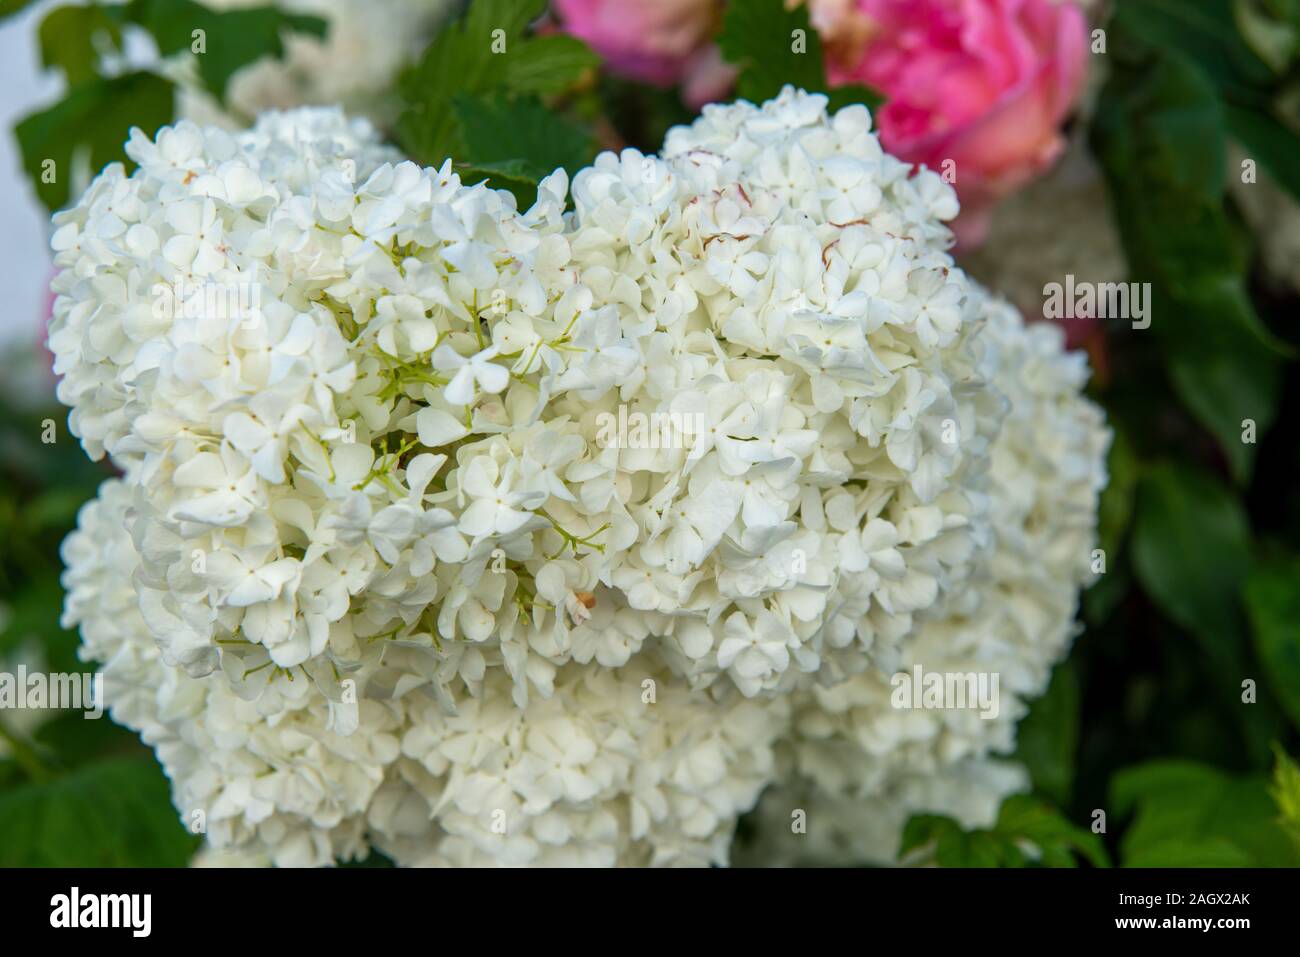 Nahaufnahme einer weiß blühenden Blume Foto de stock